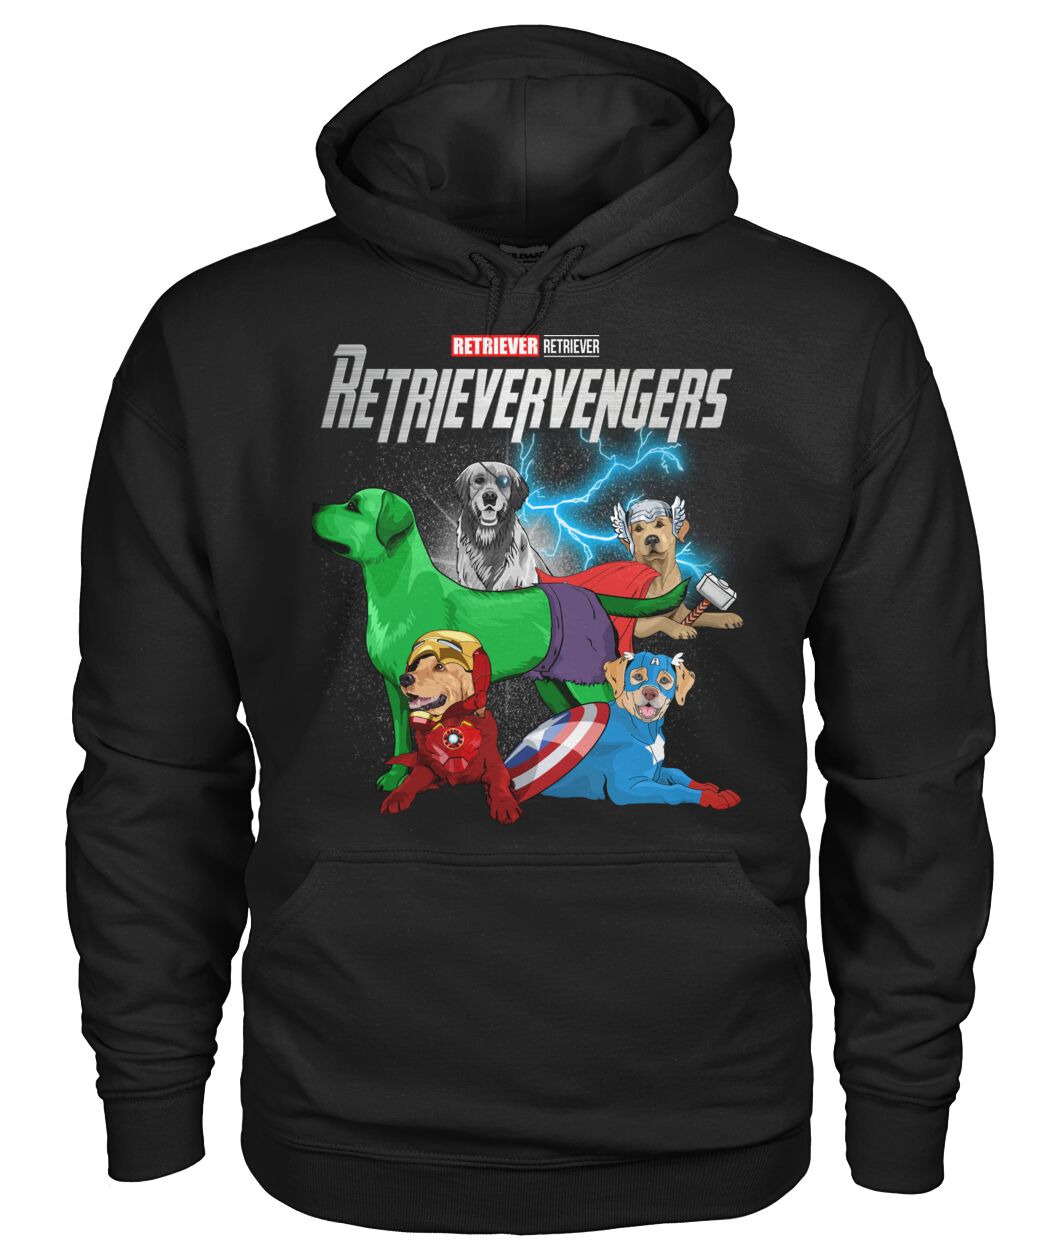 Retrievervengers 3D Hoodie, Shirt 9